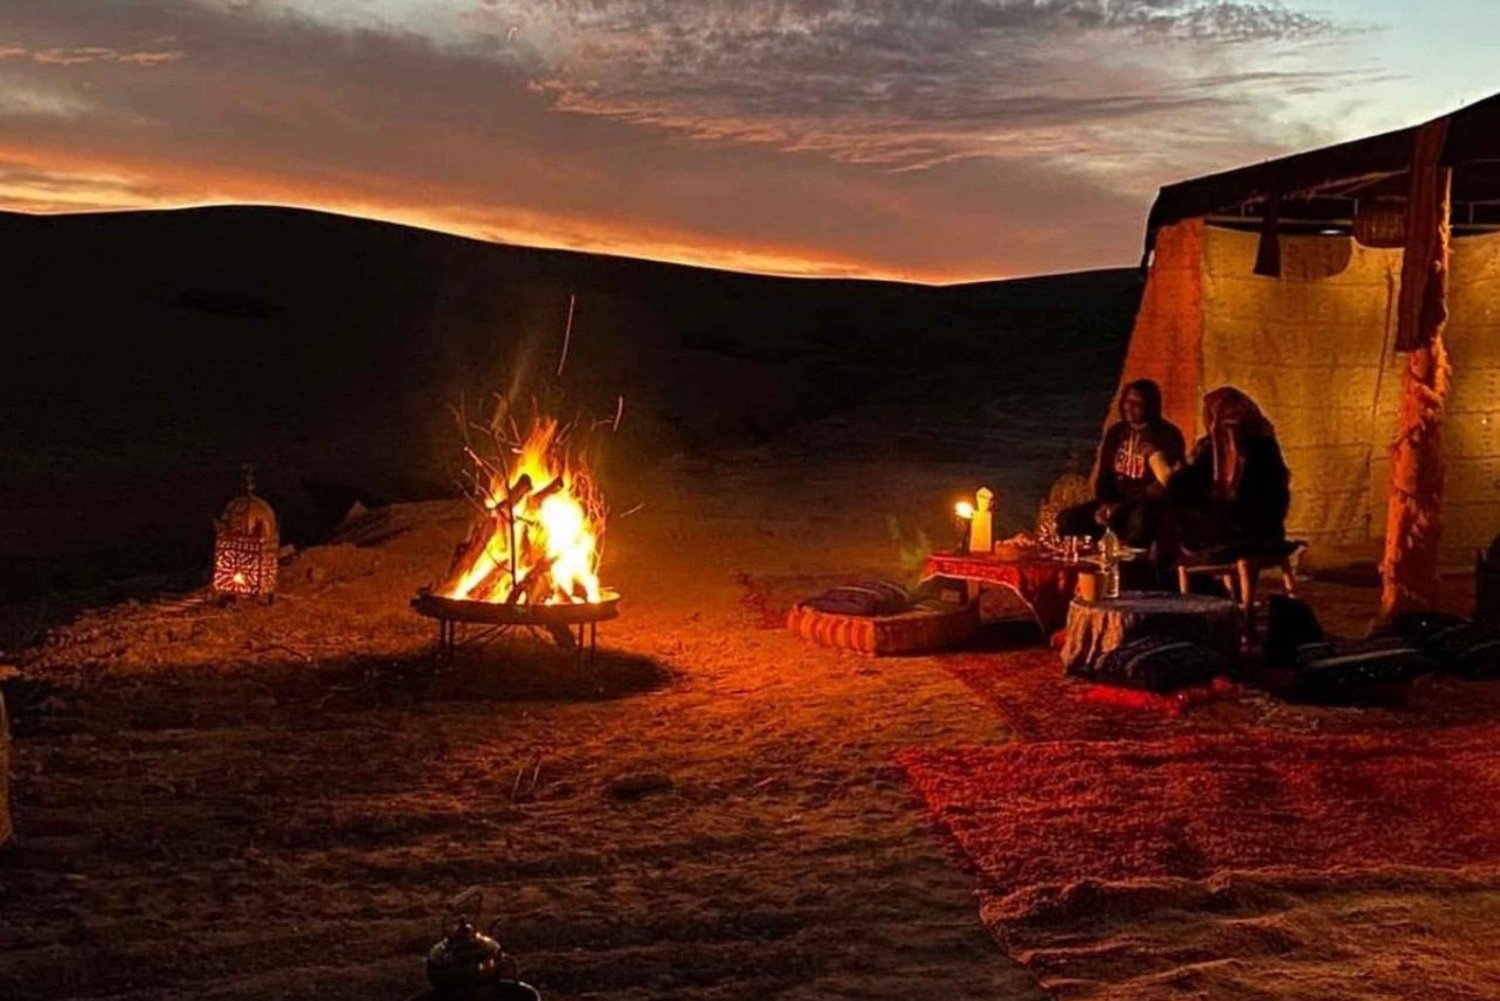 Marrakeshista: Agafayn berberileirillä auringonlaskun aikaan: Illallinen Agafayssa berberileirillä